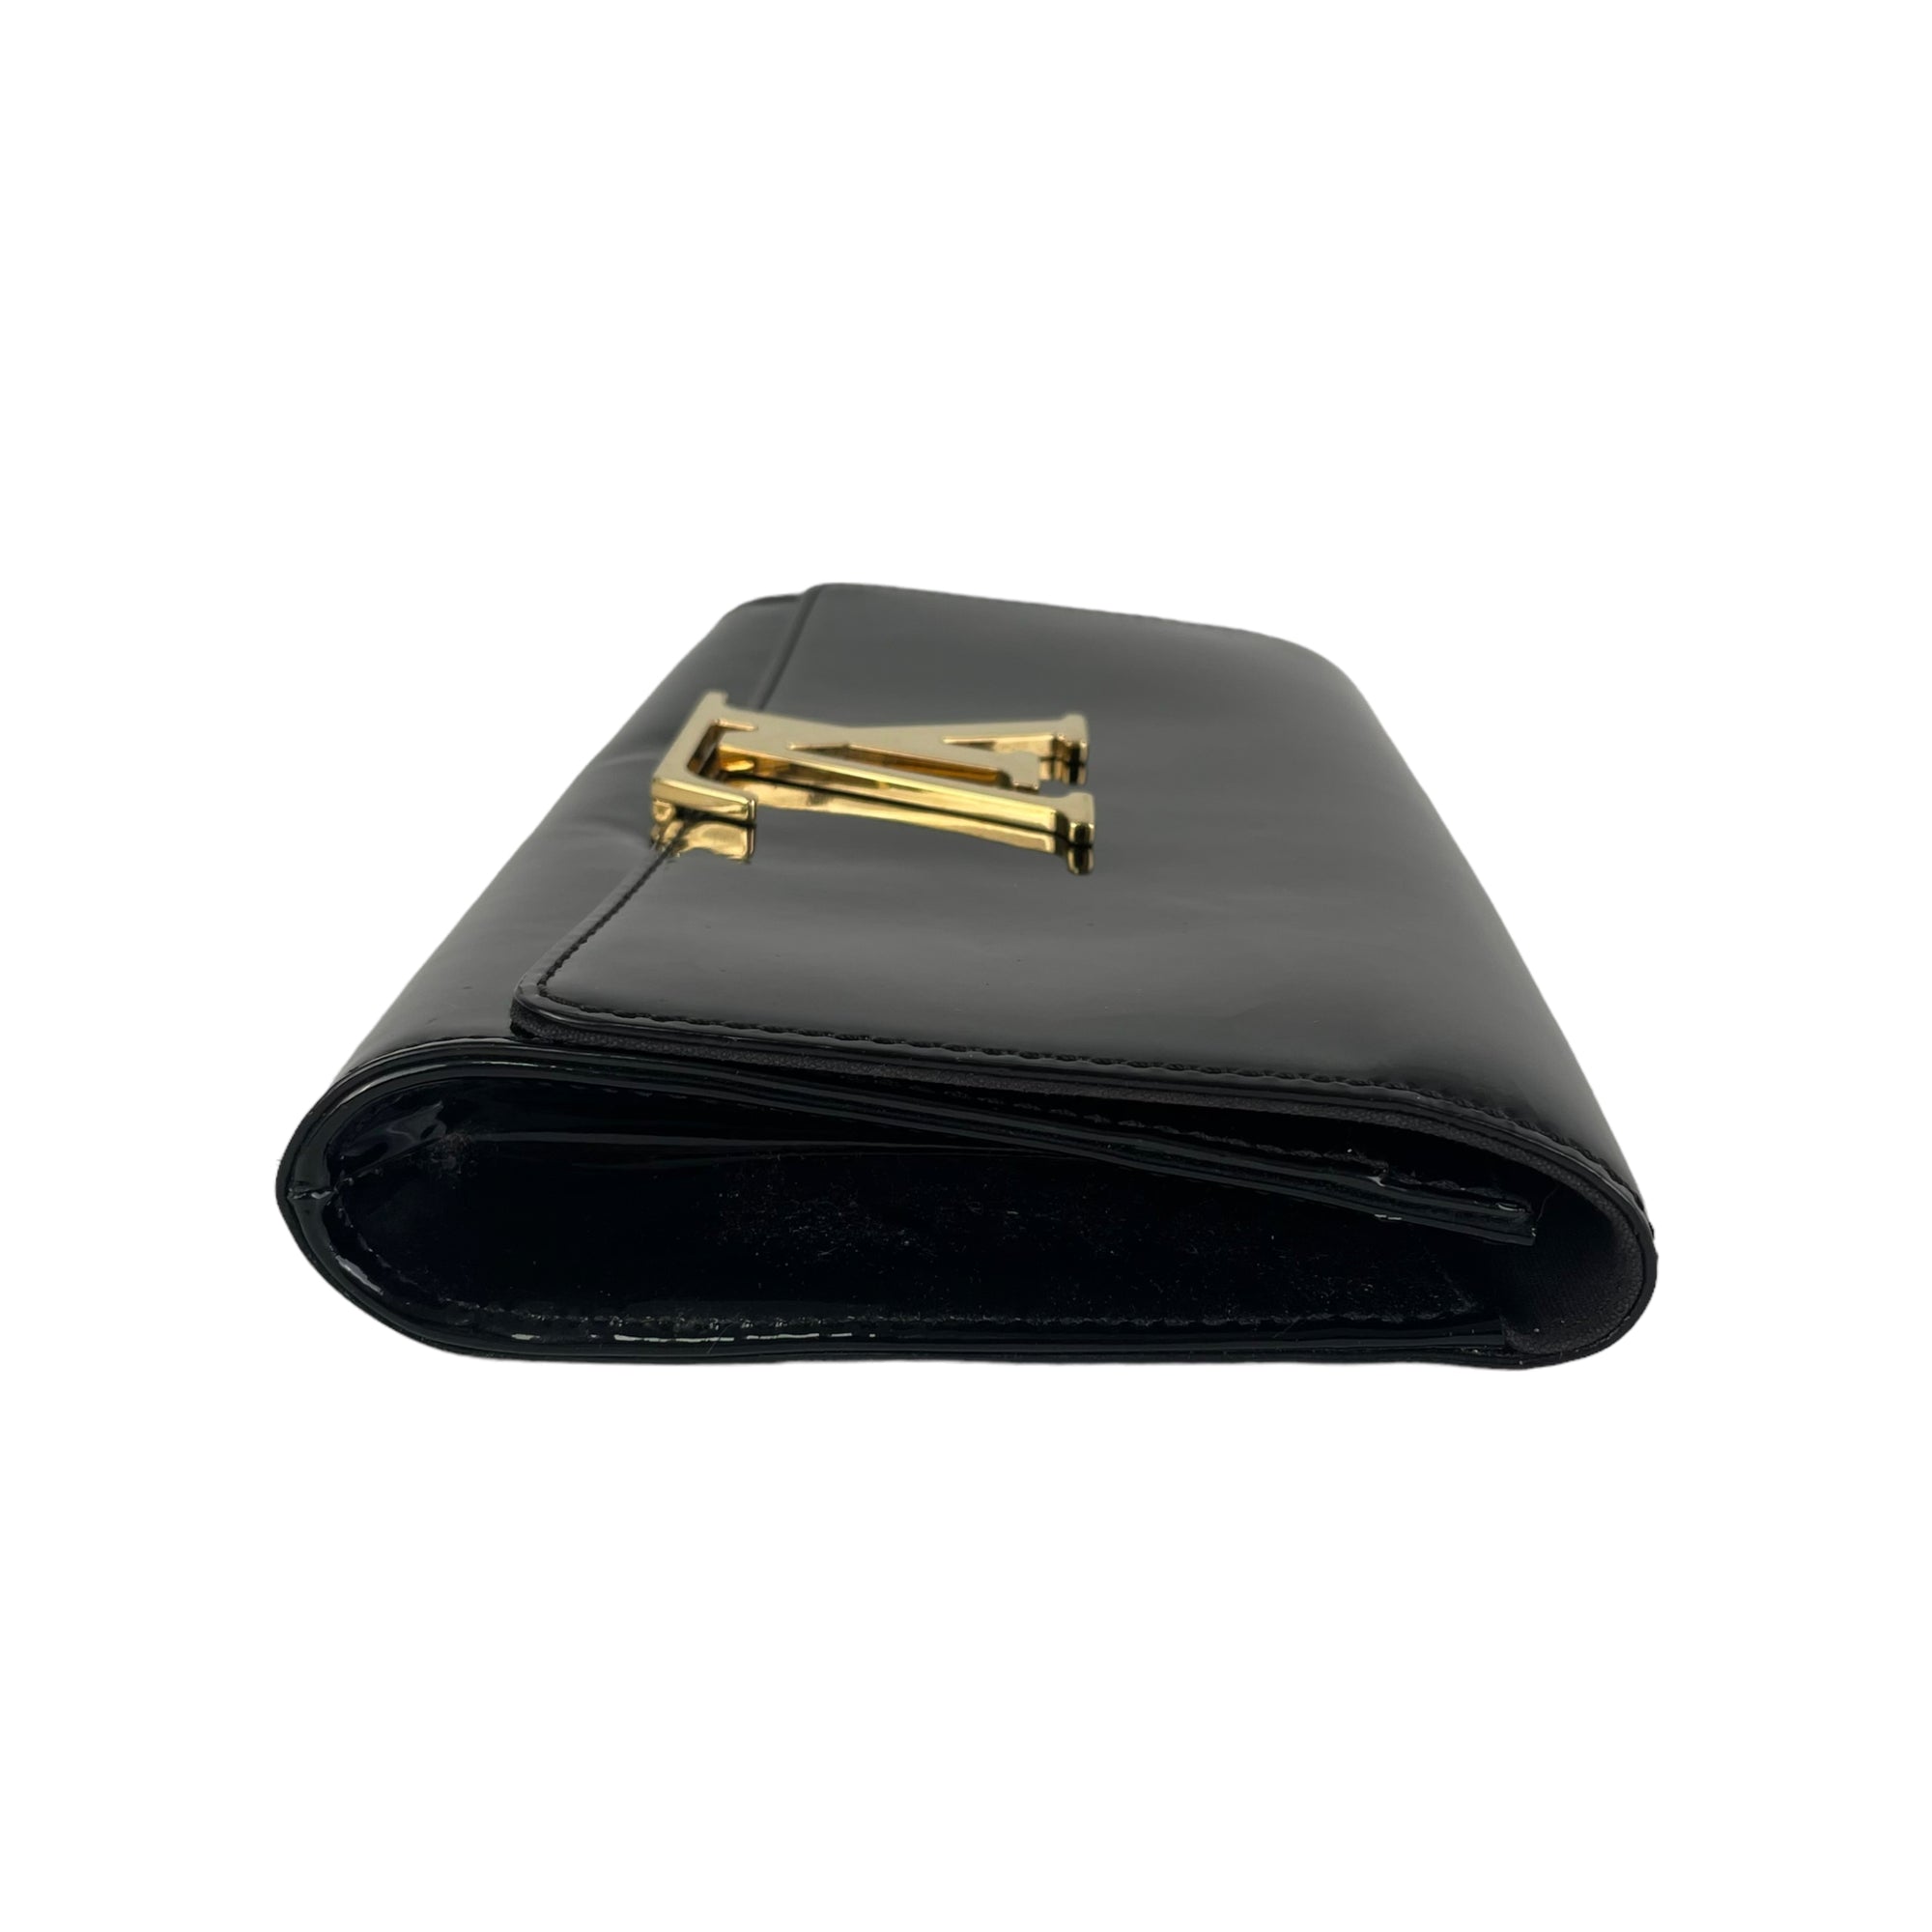 Louis Vuitton Vernis Louise Clutch - Black Clutches, Handbags - LOU801474